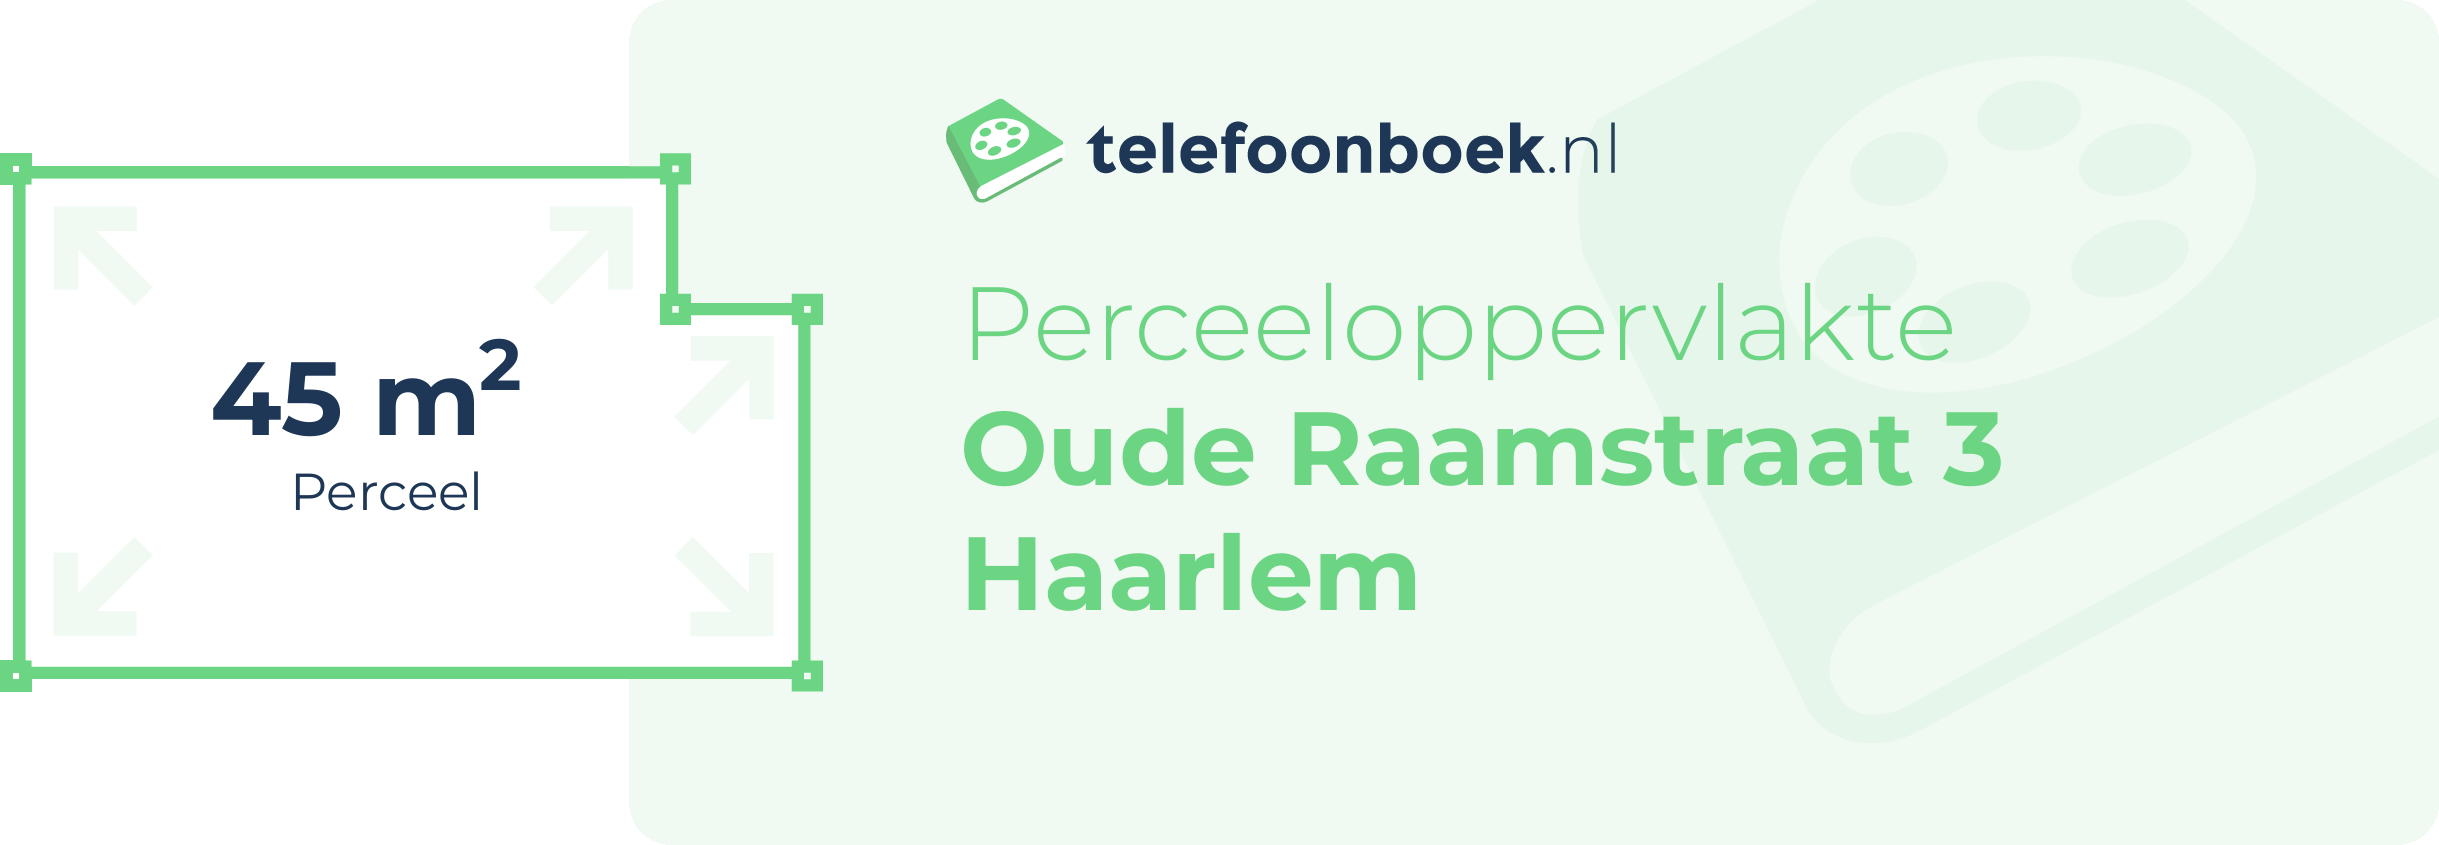 Perceeloppervlakte Oude Raamstraat 3 Haarlem